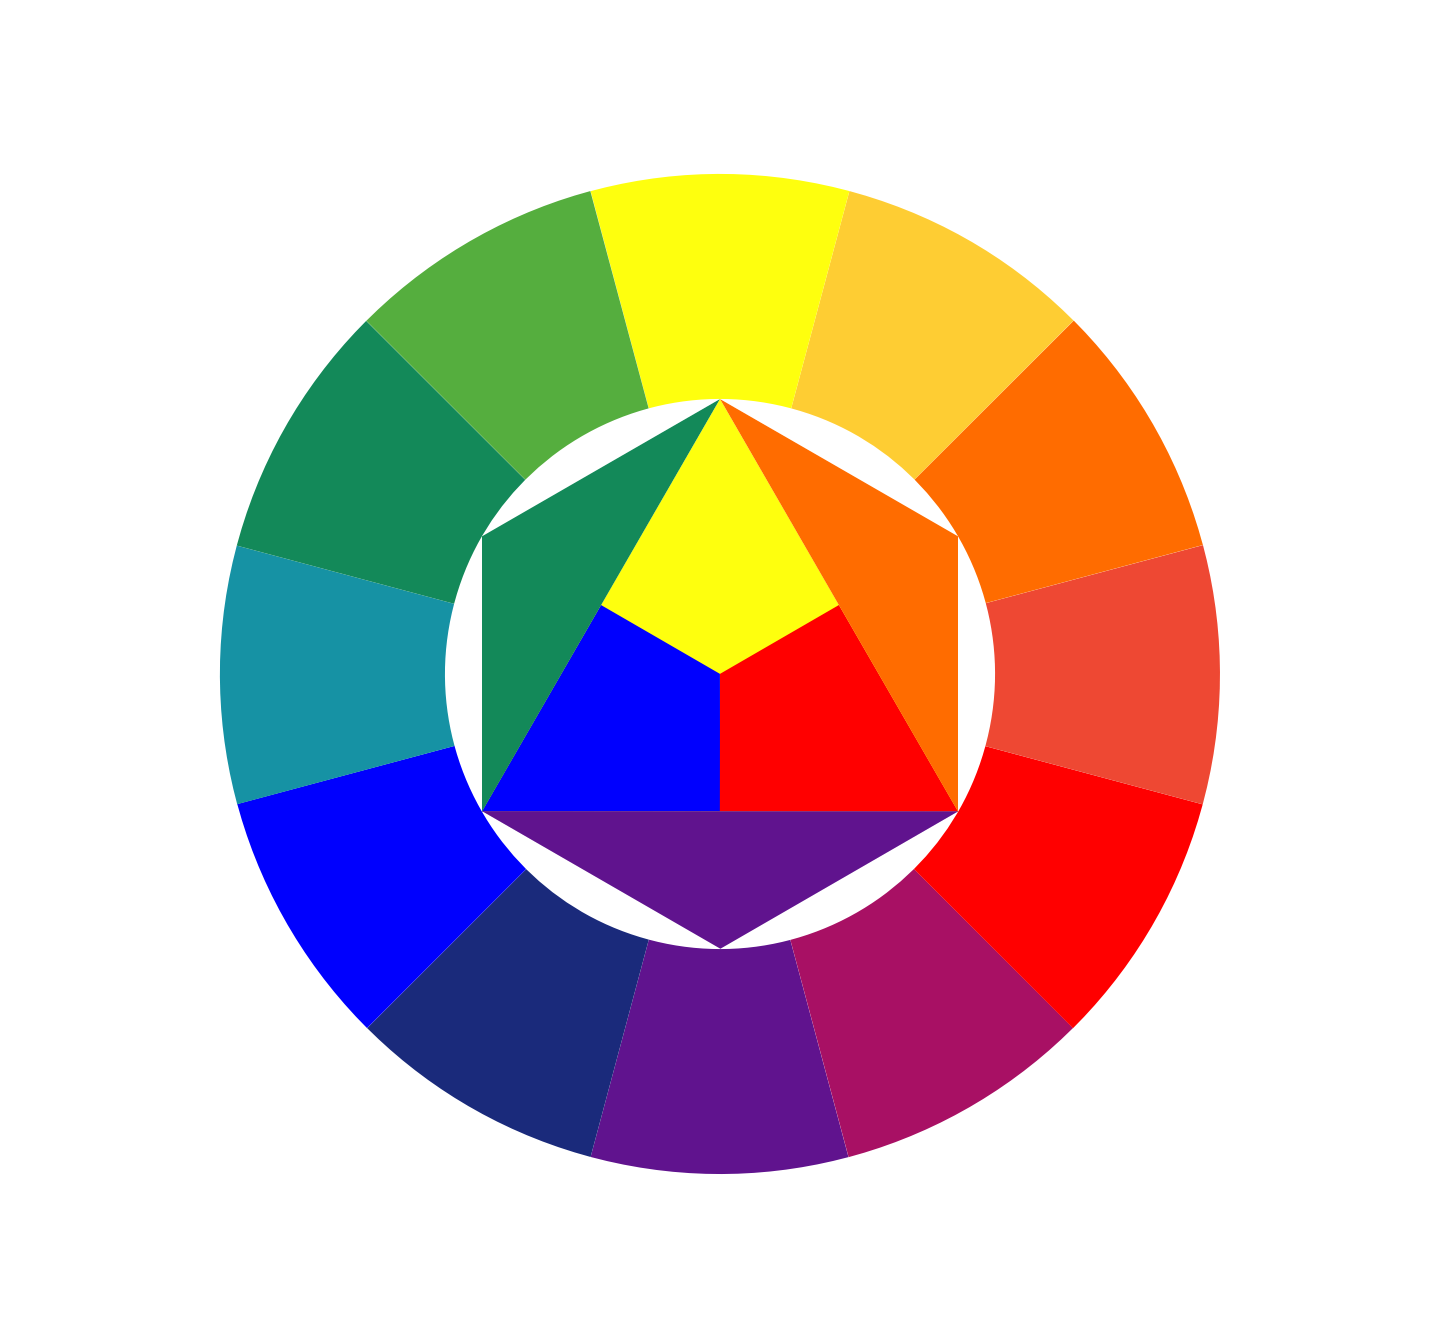 Круг Иоханнеса Иттена. Цветовой спектр Иттена. Иоганнес Иттен цветовой круг. Цветовой круг Иттена контрасты. Круг иттена это